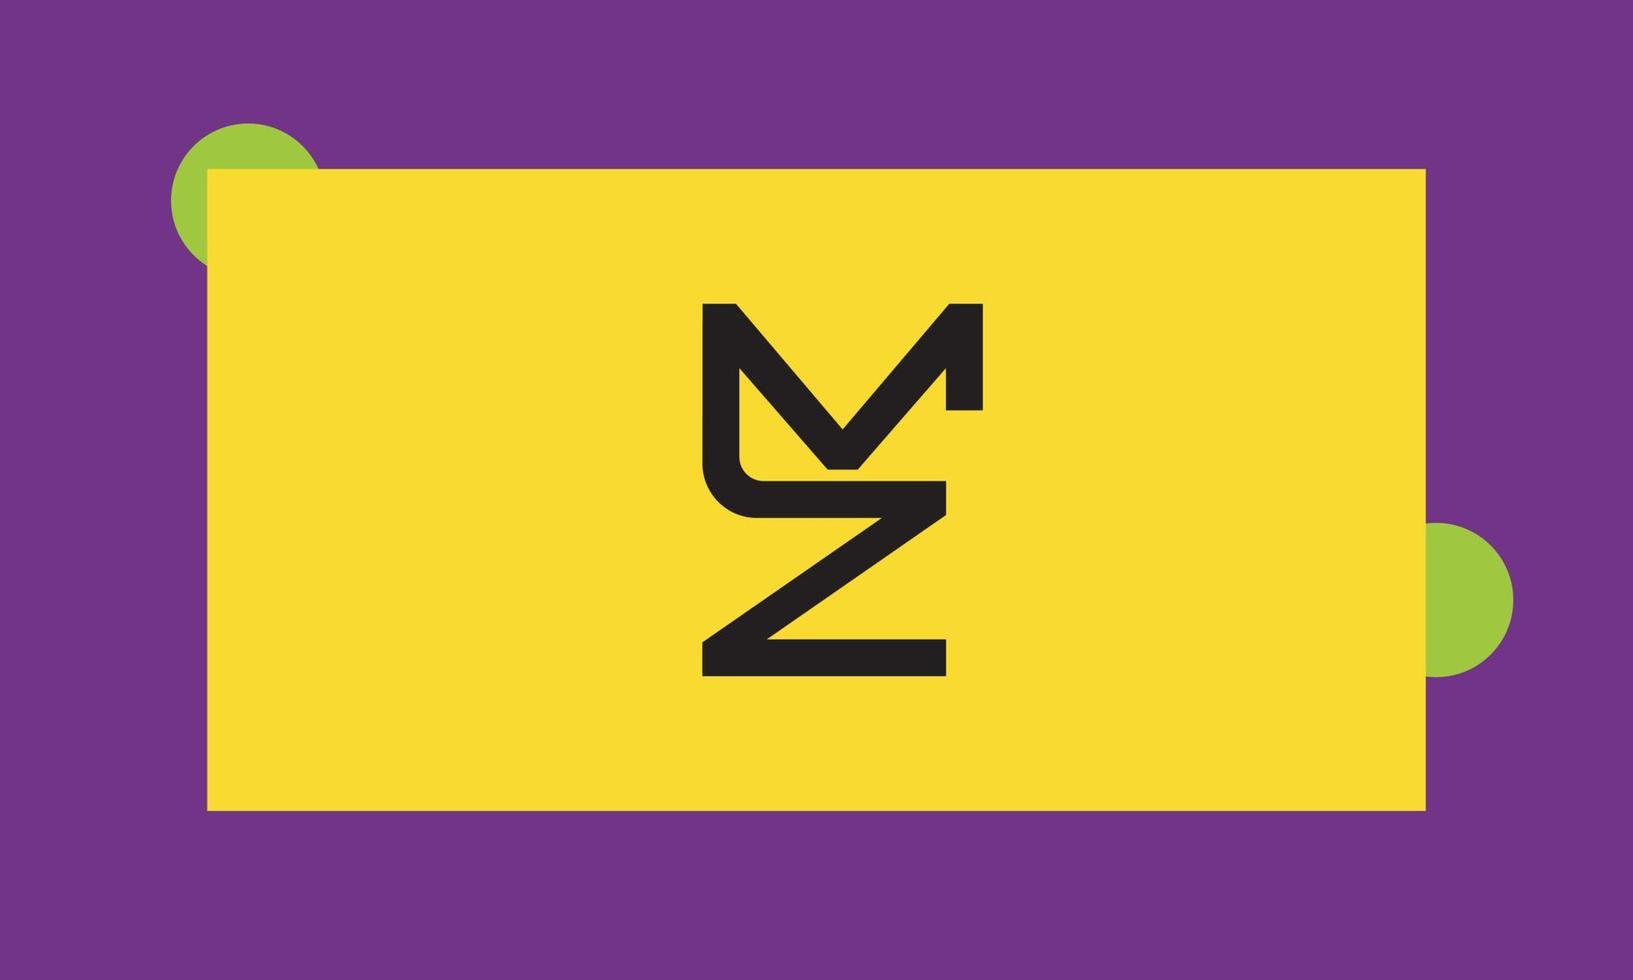 letras del alfabeto iniciales monograma logo mz, zm, m y z vector